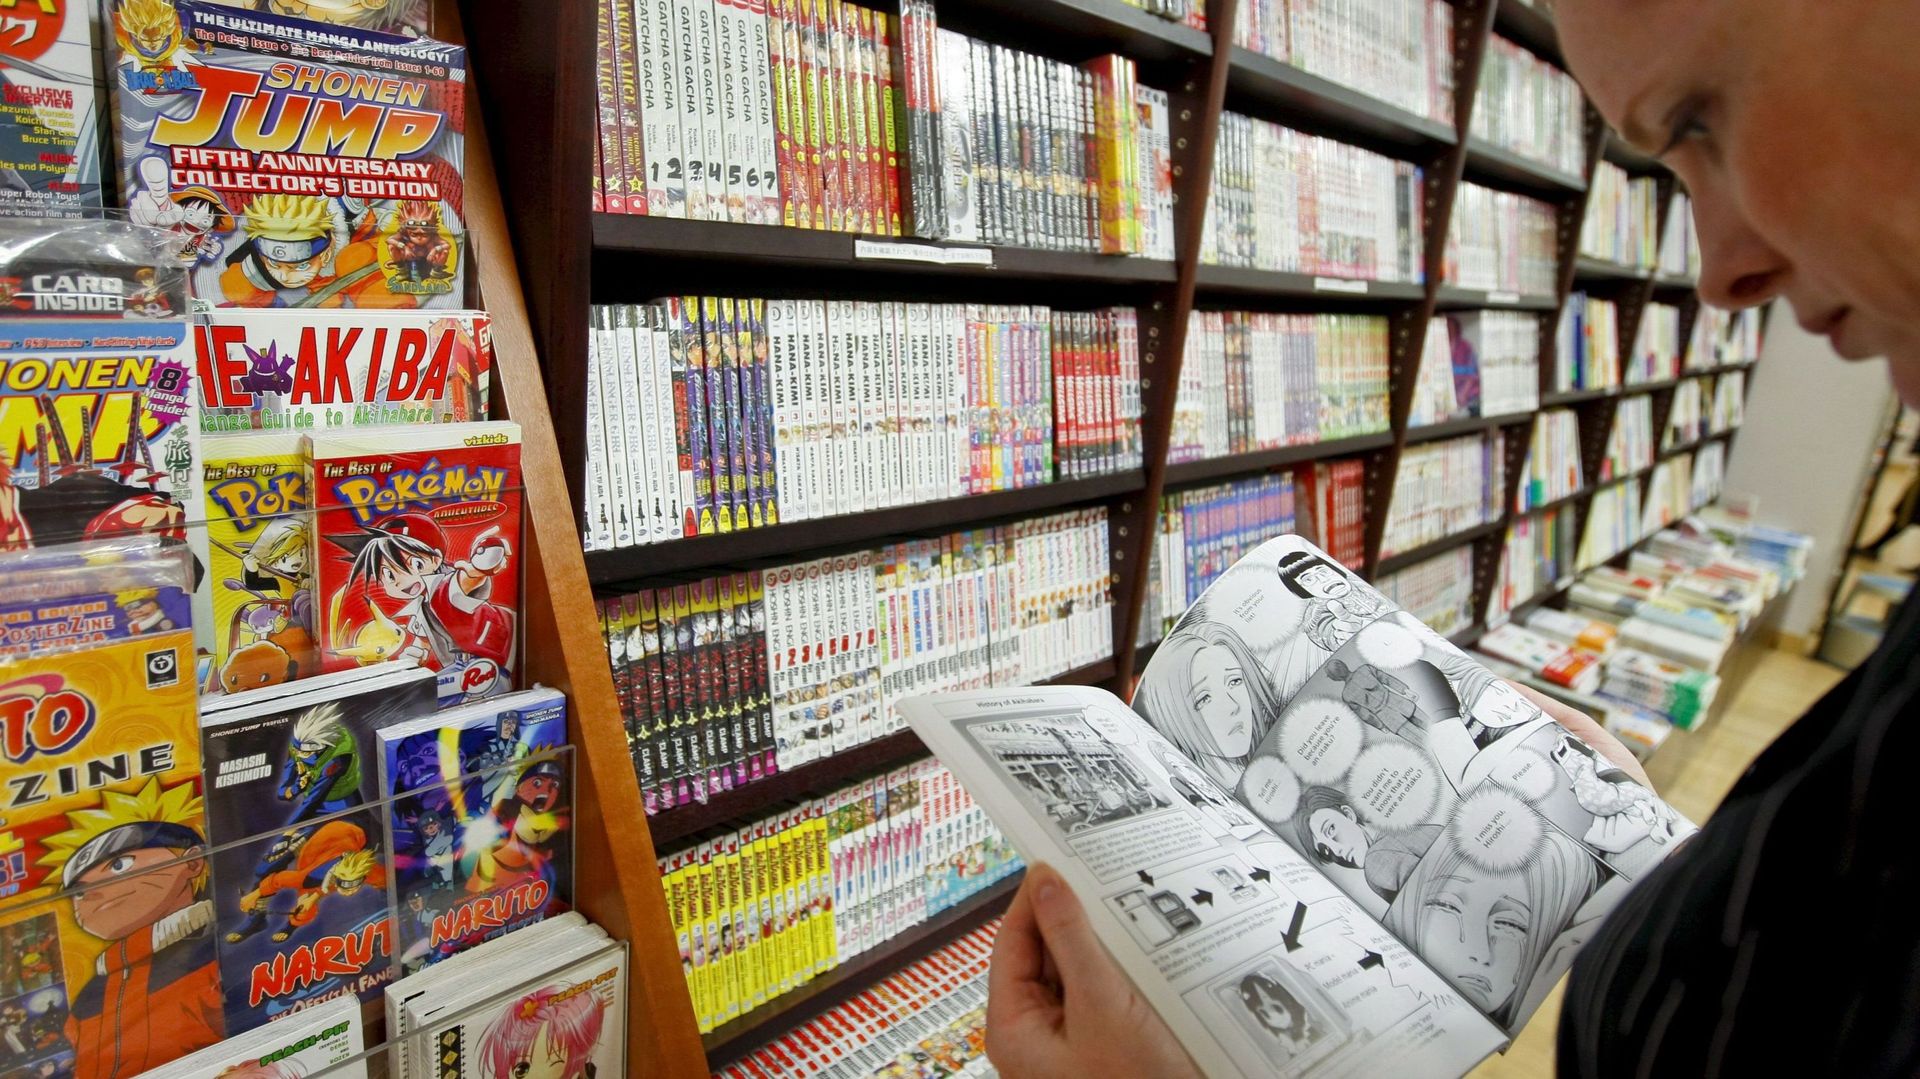 Les BD's et mangas, ces super-héros venus sauver le monde du livre ?